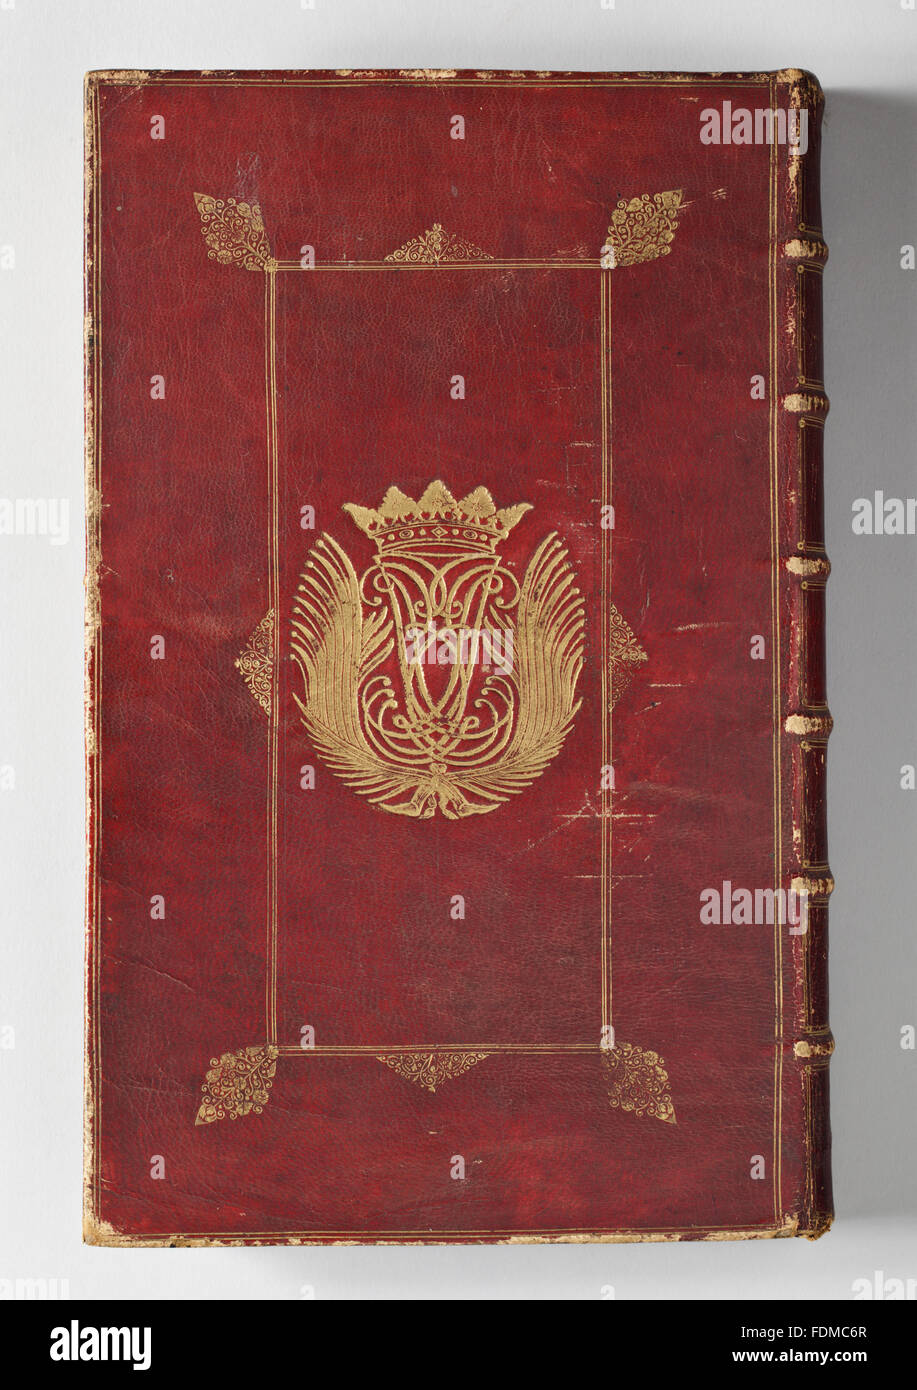 Livre de la prière commune, relié en cuir rouge Maroc, 1675, estampé en or avec l'inversion de cypher JEL, surmontée d'une couronne ducale à l'arrière et avant, à Ham House, Surrey. Numéro d'Inventaire National Trust : 1139620. Banque D'Images